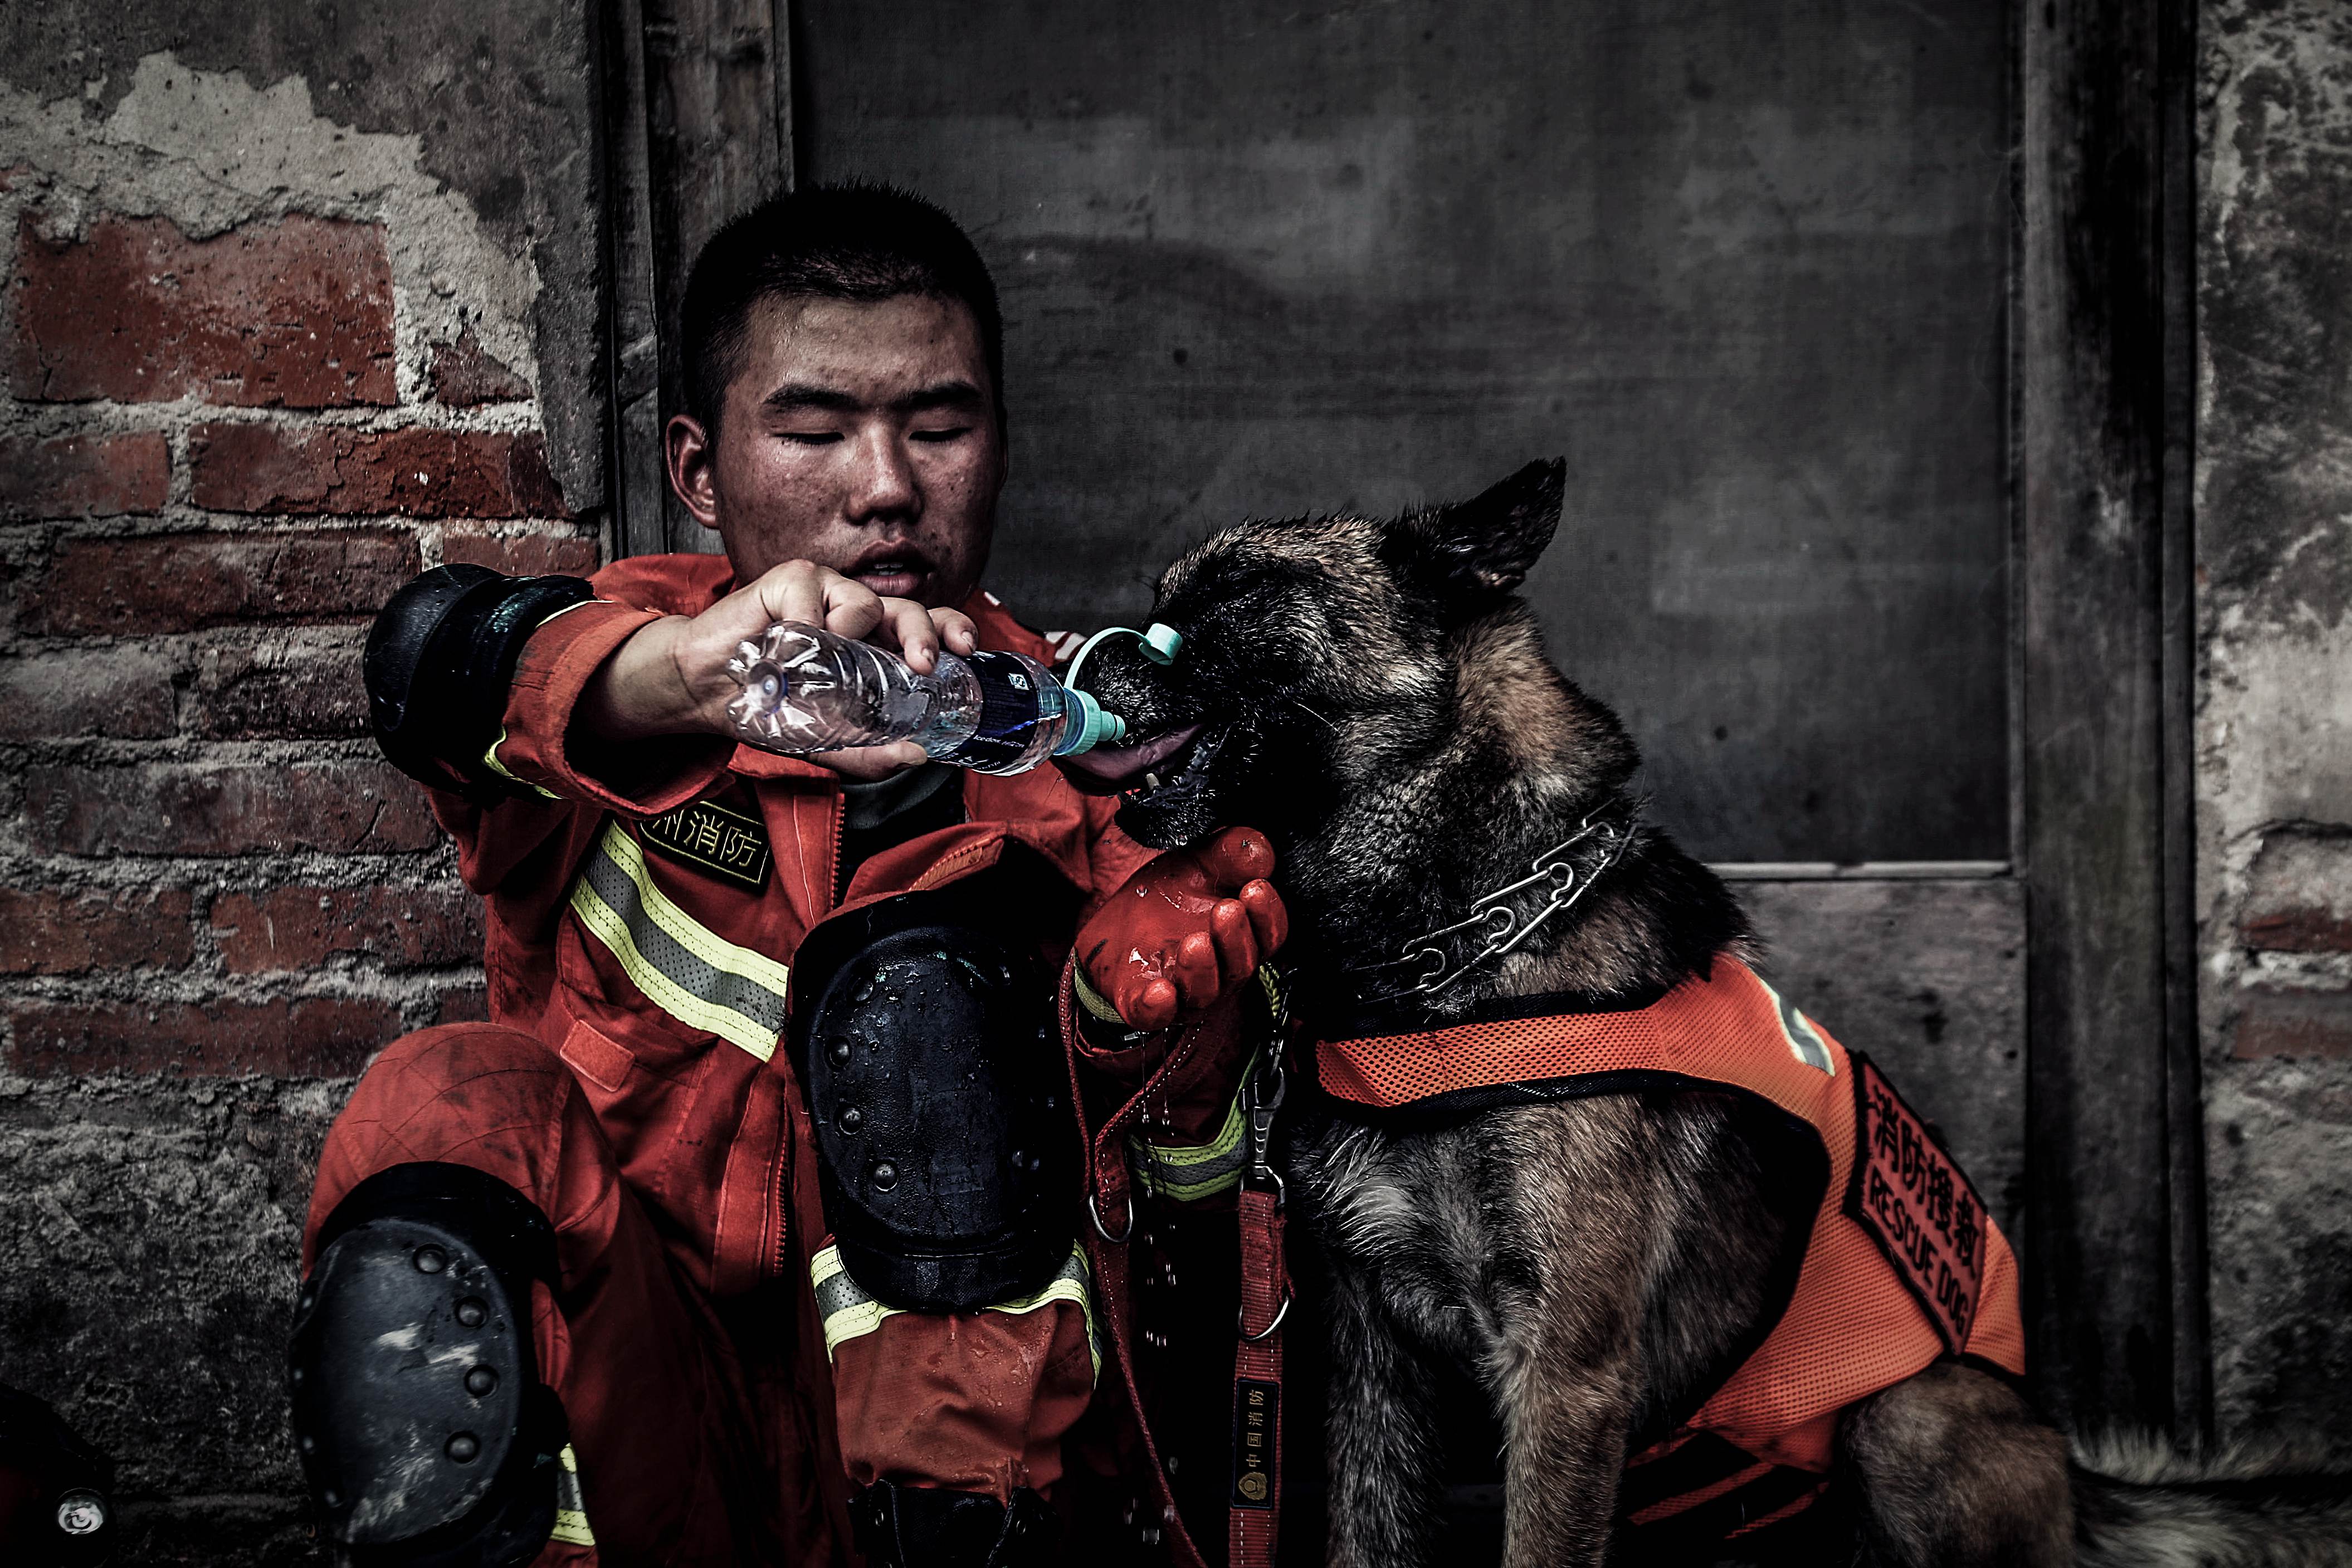 河南安阳消防员摄影作品《无声战友》获国际大赛金奖